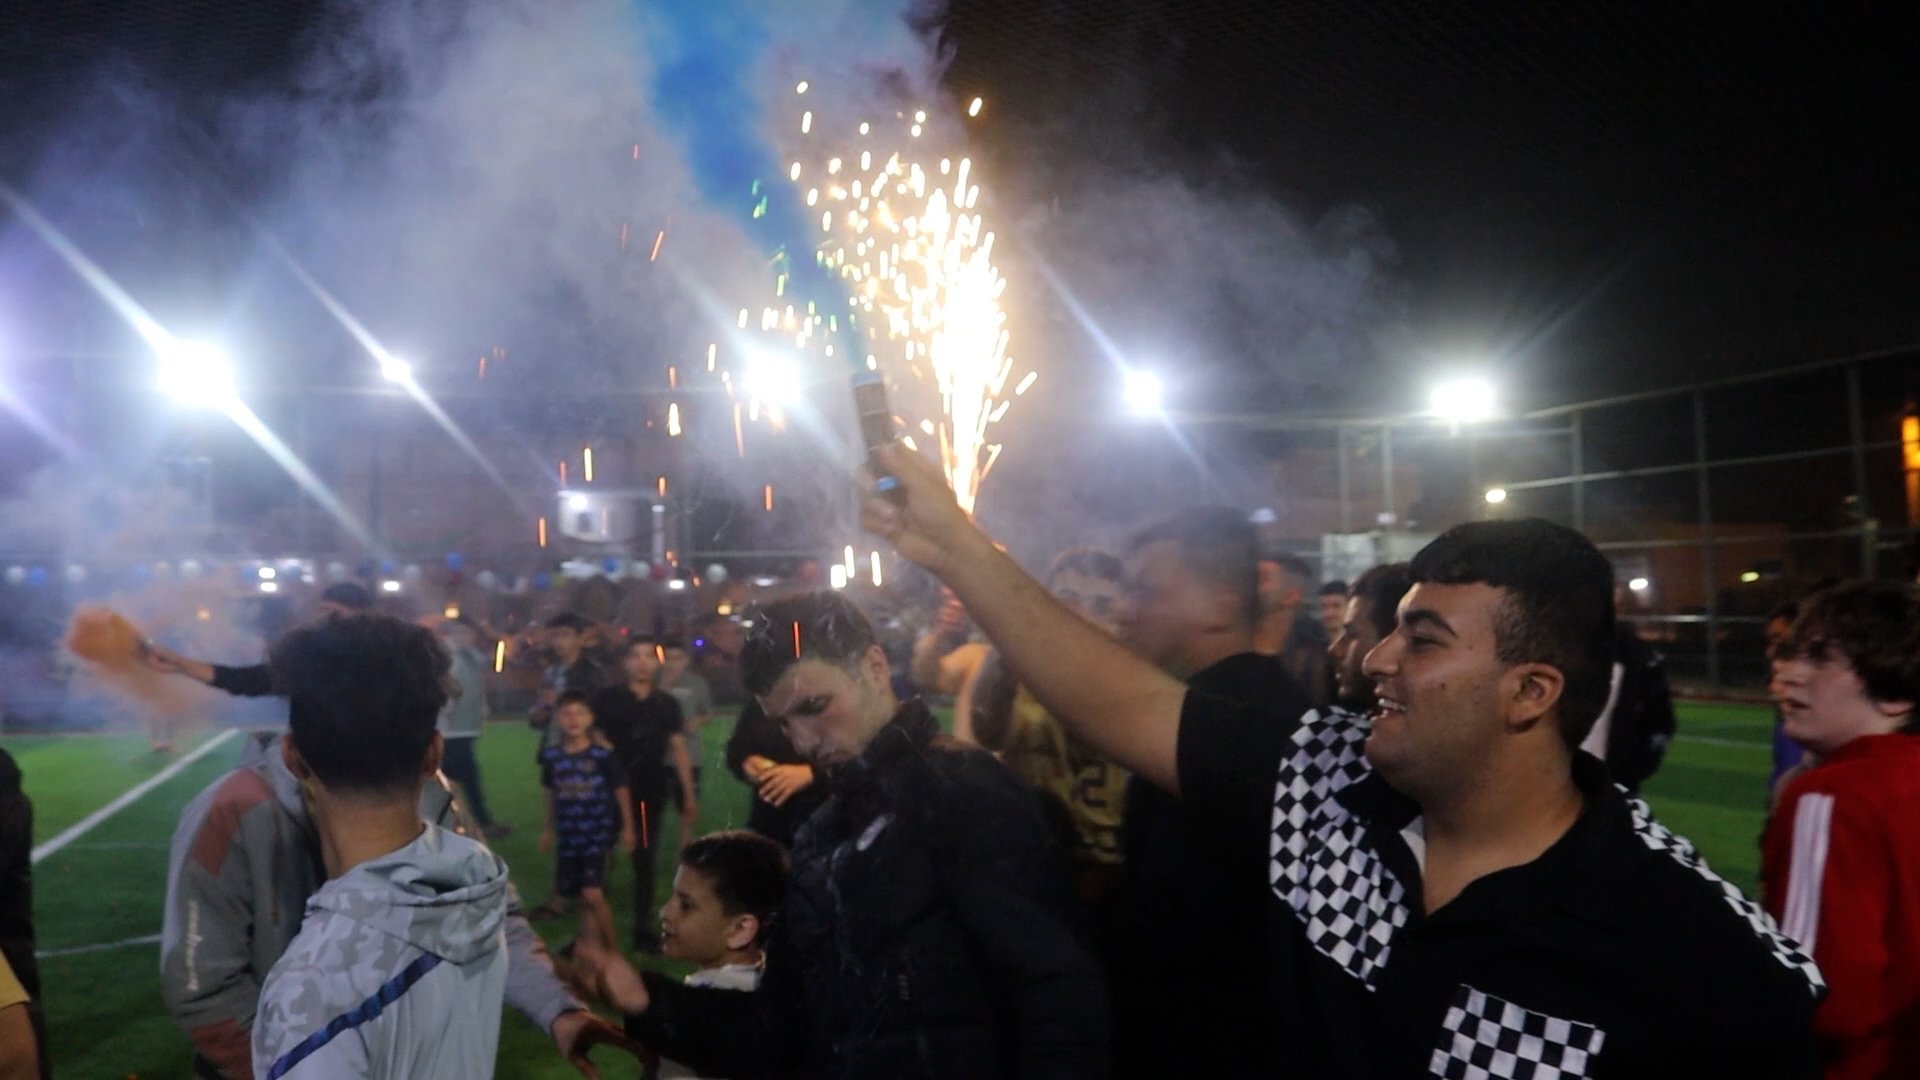 ملعب السلام يشتعل حماساً في نهائي بطولة كأس بلد لكرة القدم الشعبية